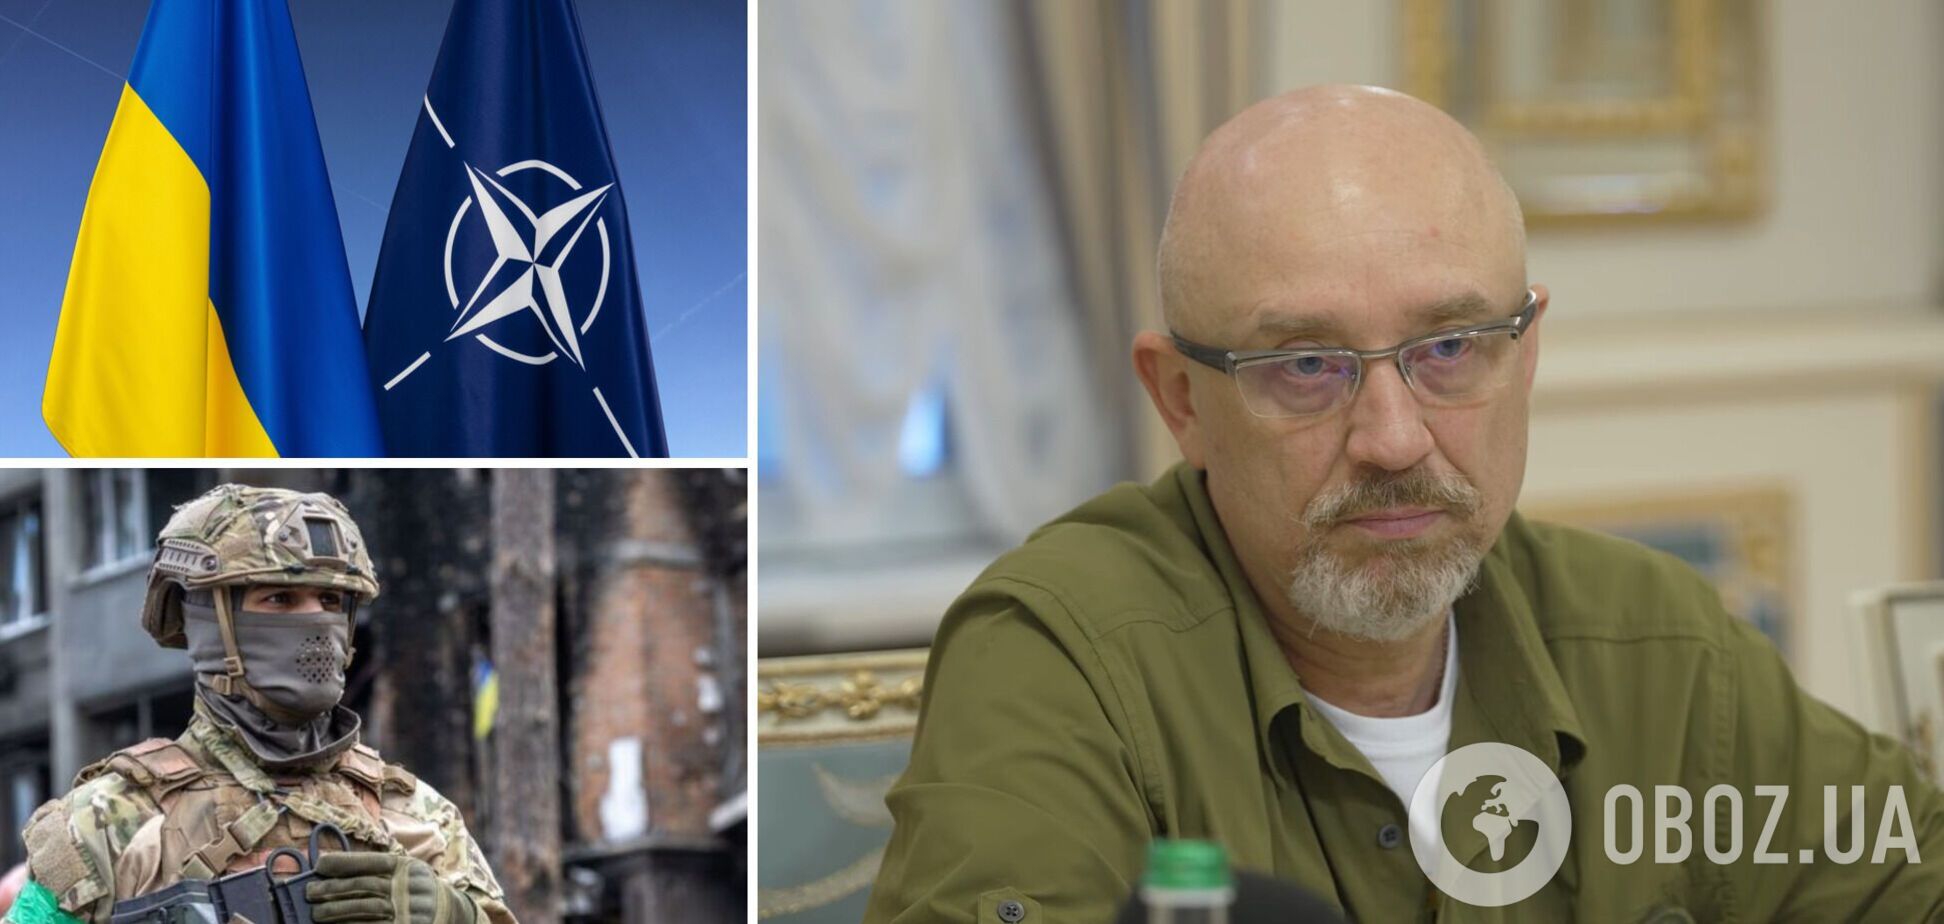 Україна за місяць зможе перевести своє озброєння на стандарти НАТО, – Резніков